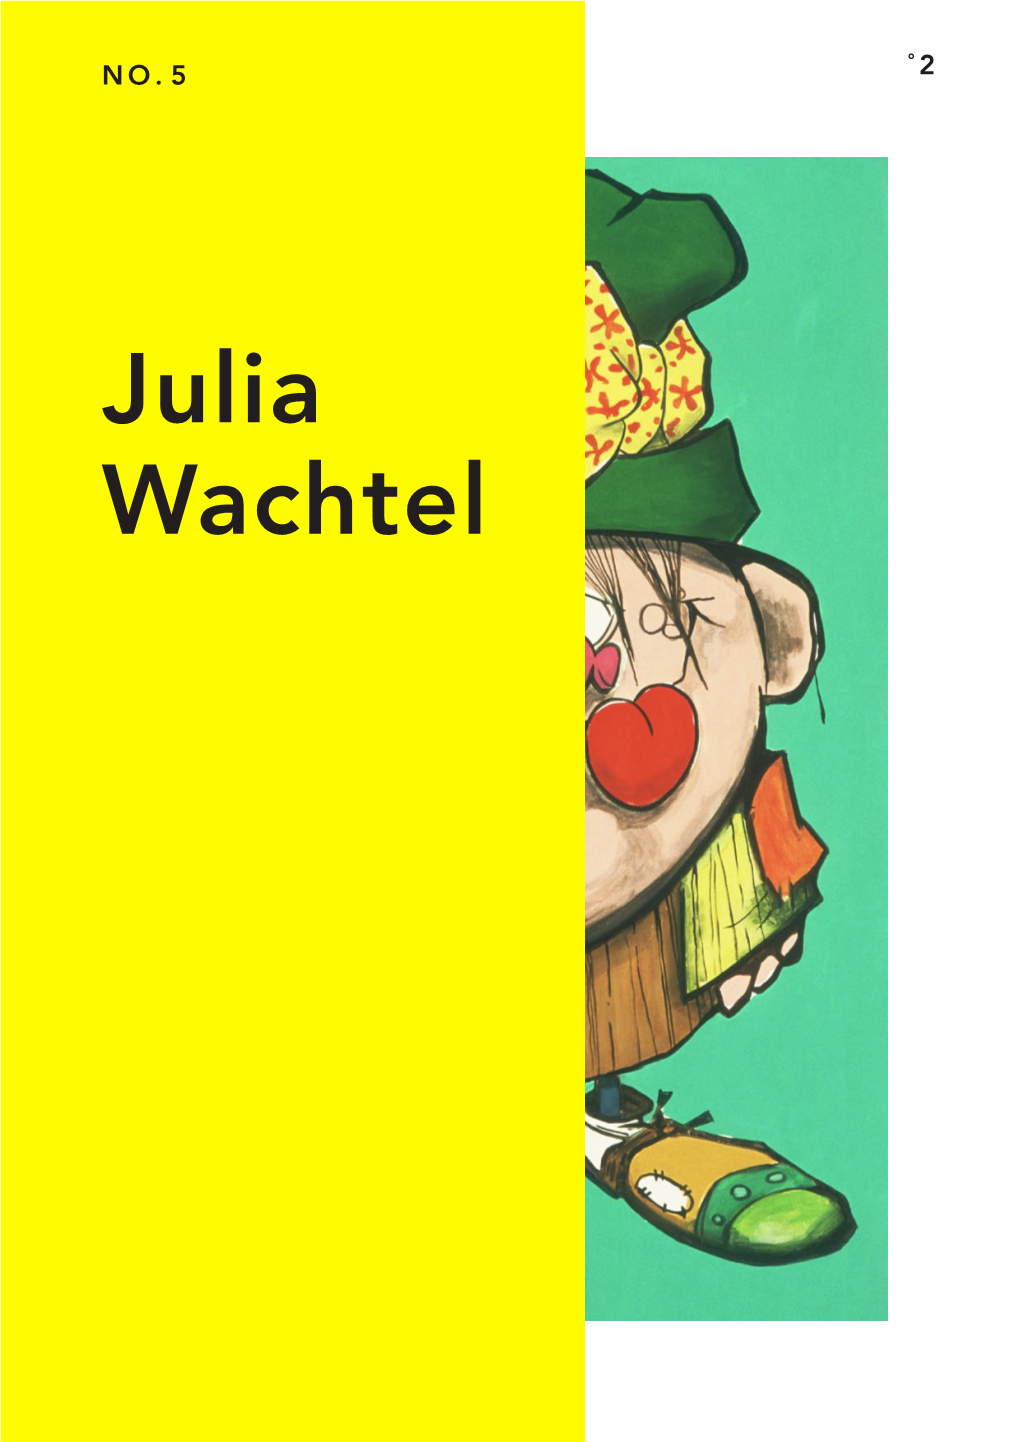 Julia Wachtel